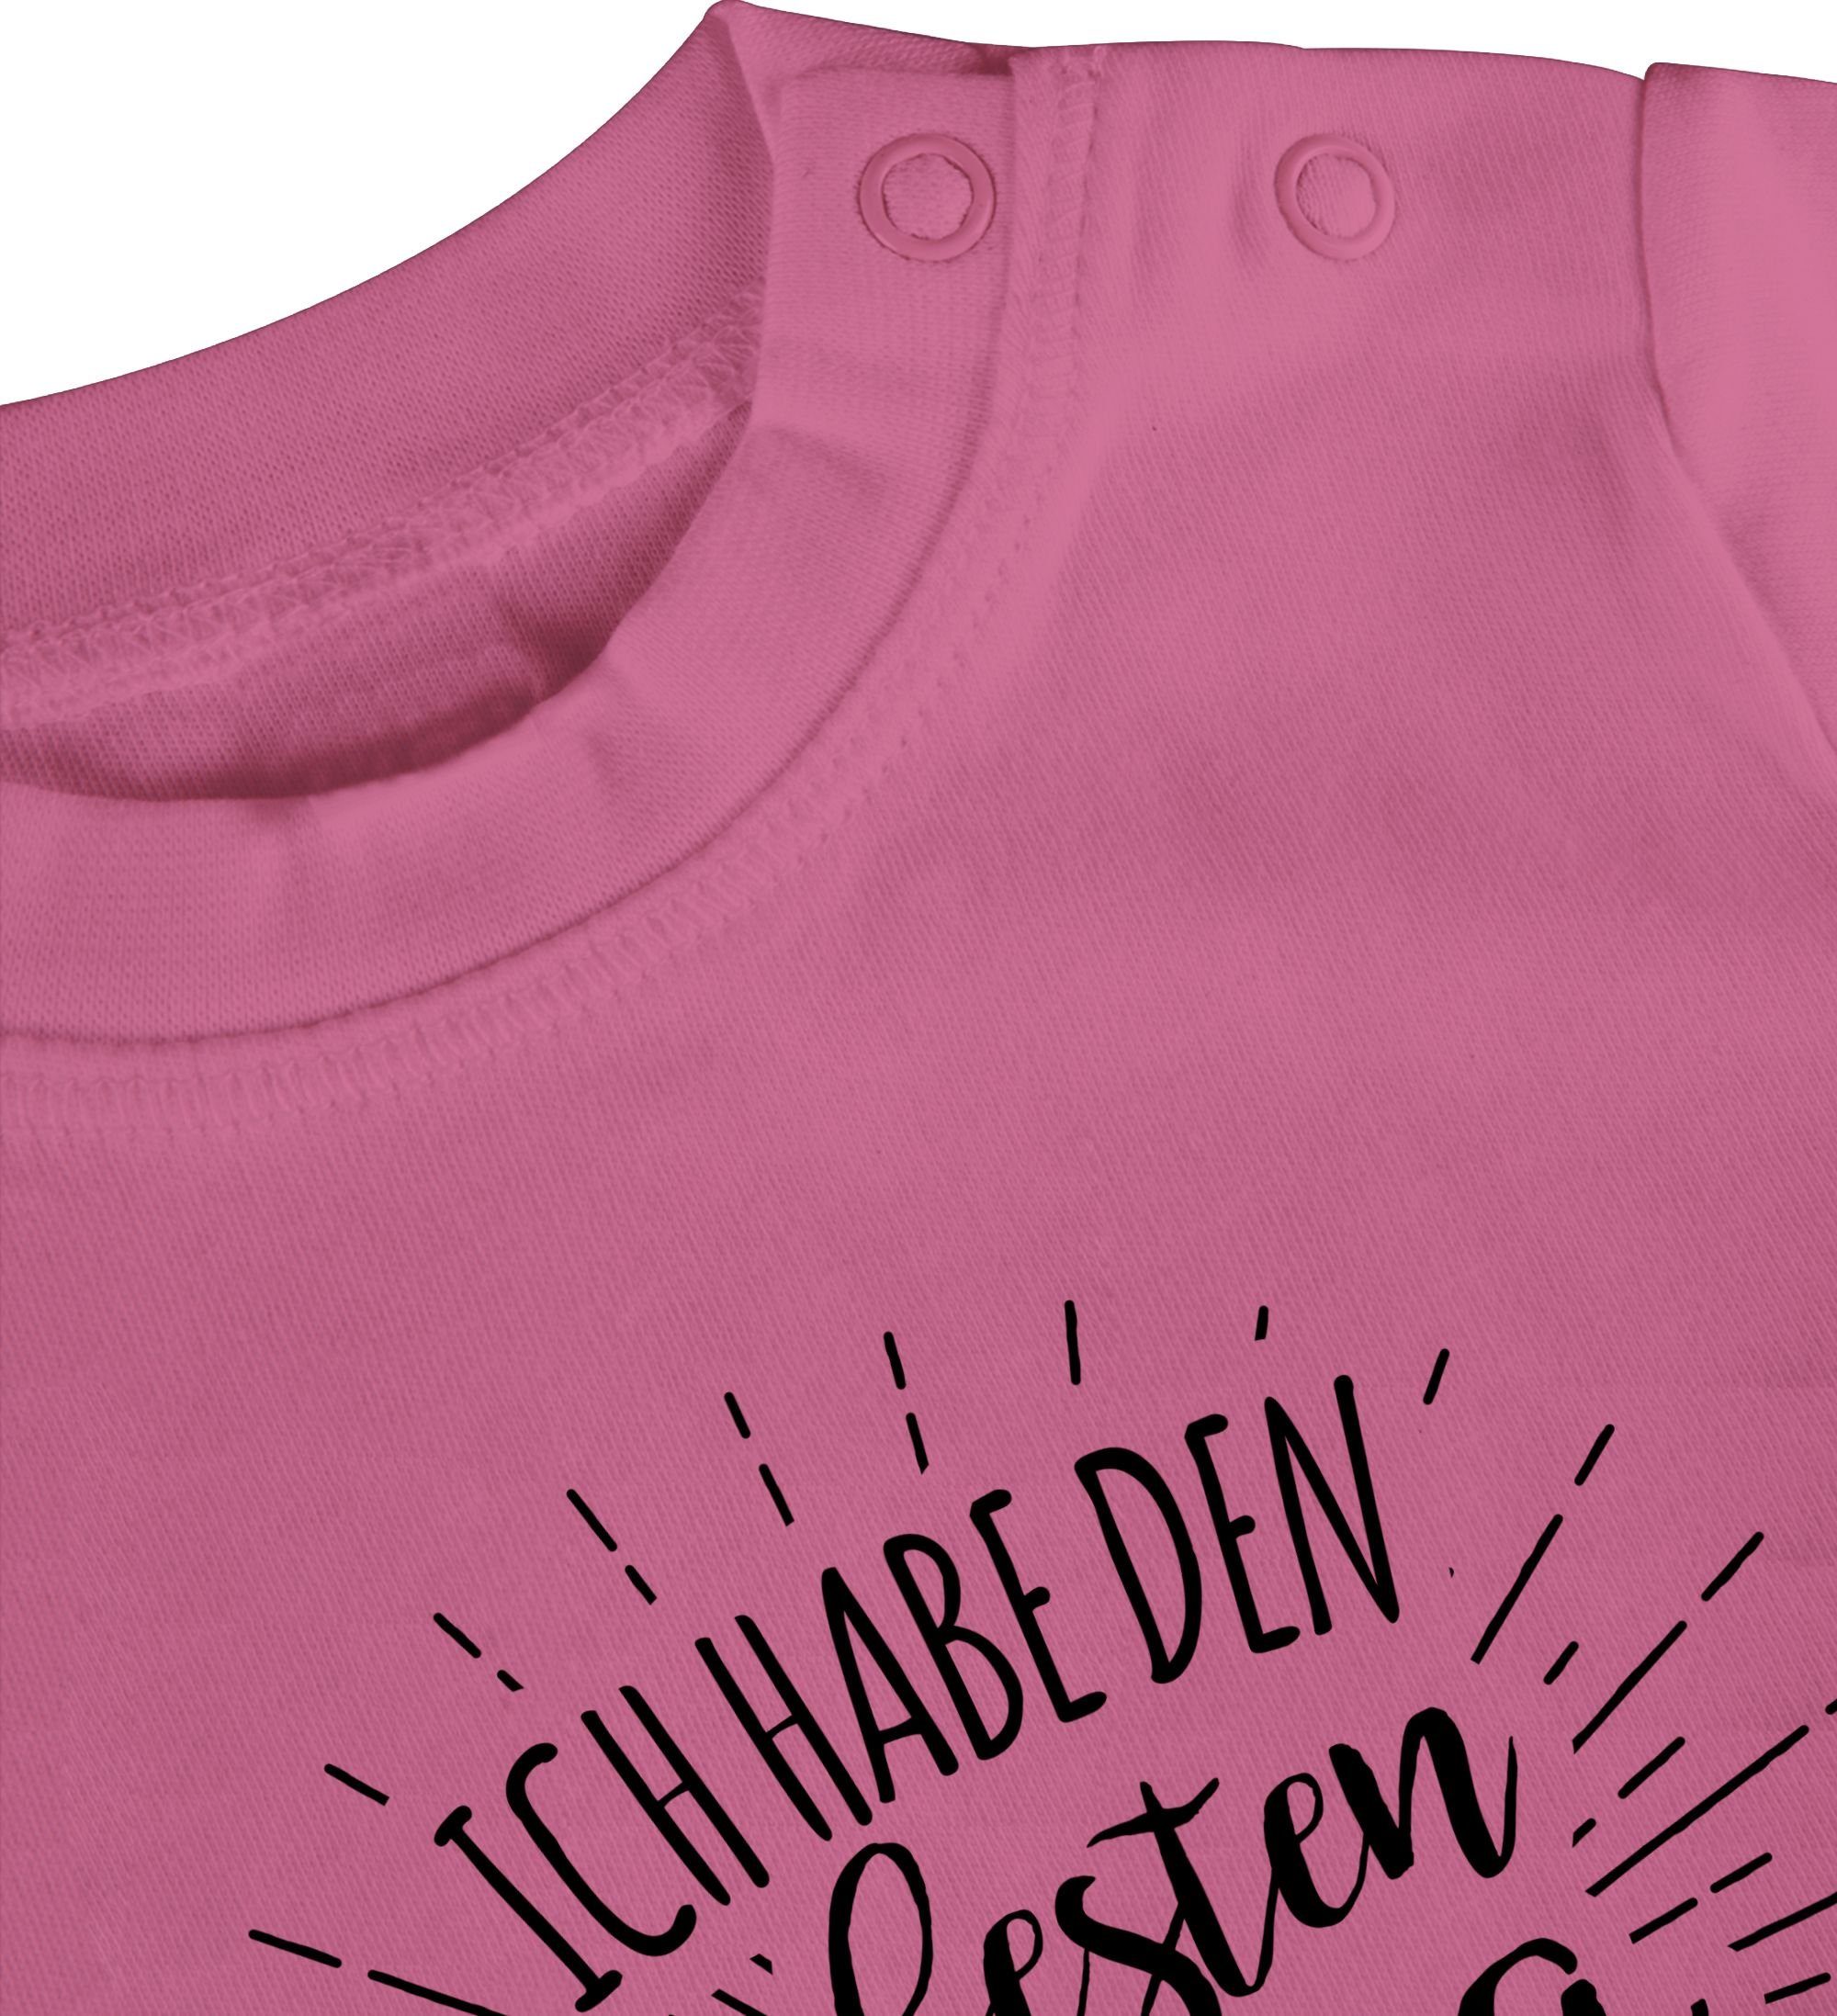 Shirtracer T-Shirt Ich habe den Pink Vatertag besten Baby Geschenk 3 Welt der Papa